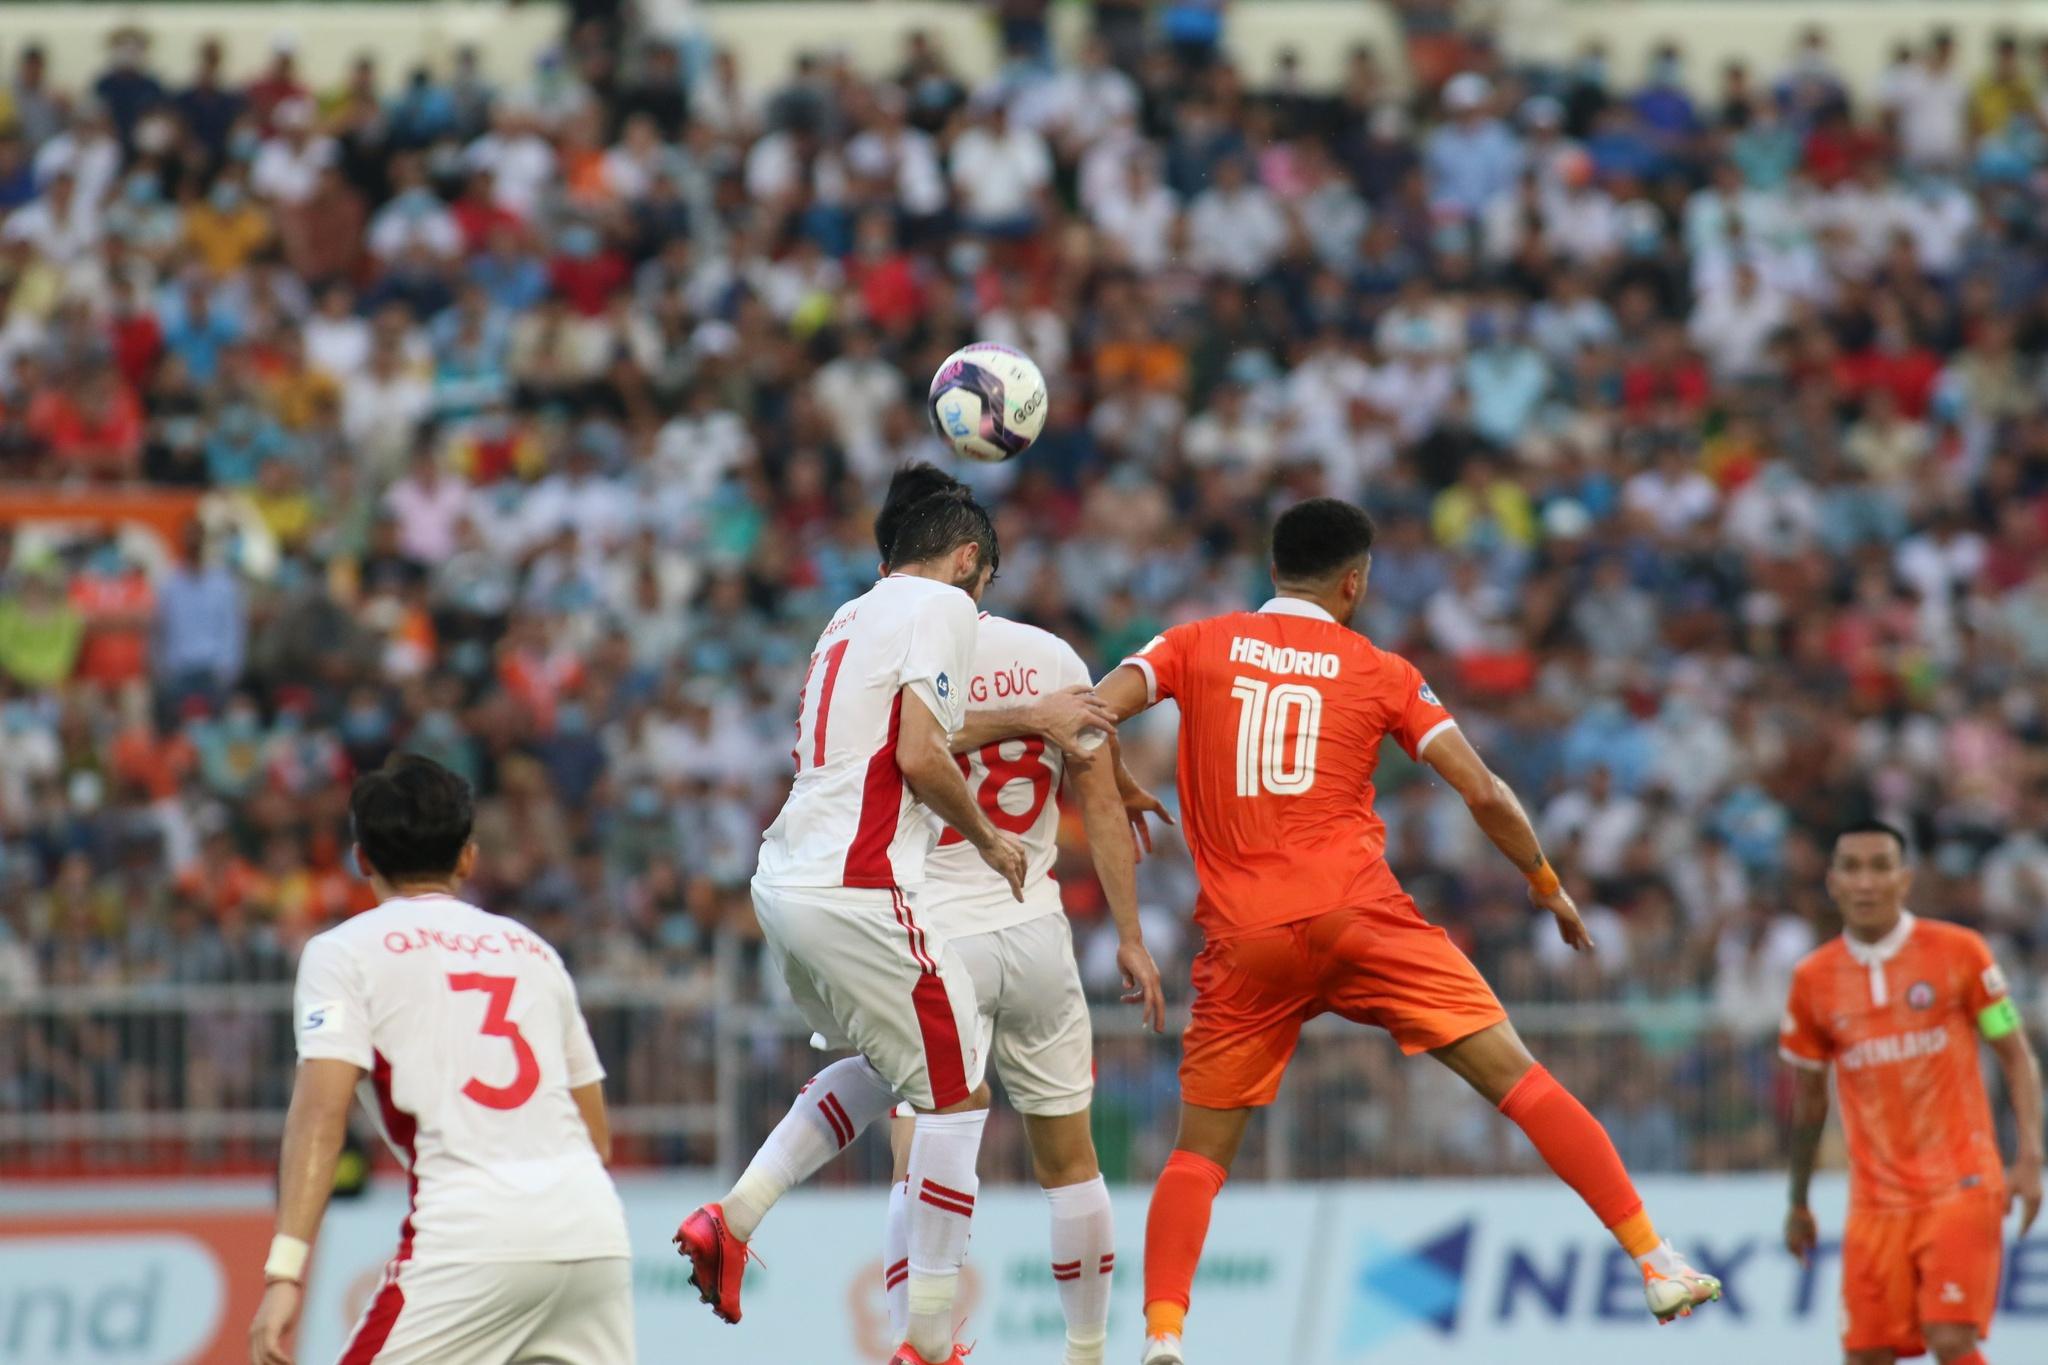 Kết quả bóng đá CLB Bình Định 0-1 Viettel: Hoàng Đức sút phạt thành 'siêu phẩm' - ảnh 1